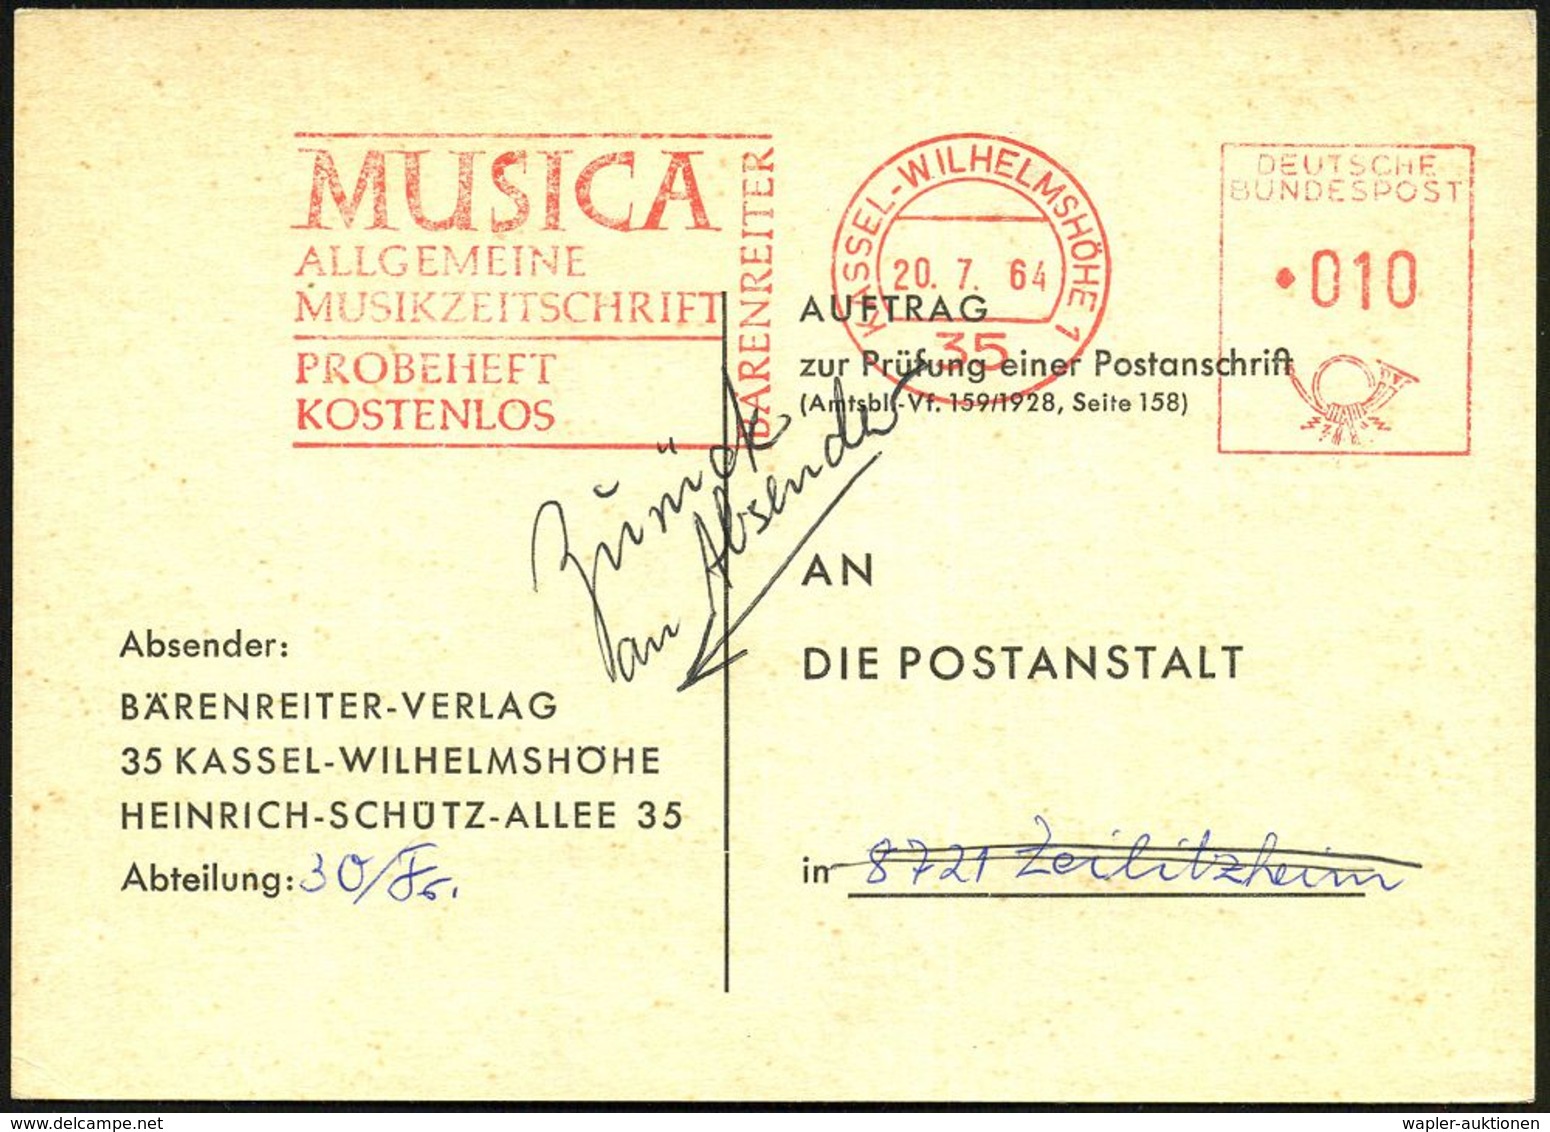 35 KASSEL-WILHELMSHÖHE/ MUSICA/ ALLG./ MUSIKZEITSCHRIFT/ BÄRENREITER.. 1964 (20.7.) AFS 010 Pf. , Firmen-Retour-Kt.: AUF - Musik